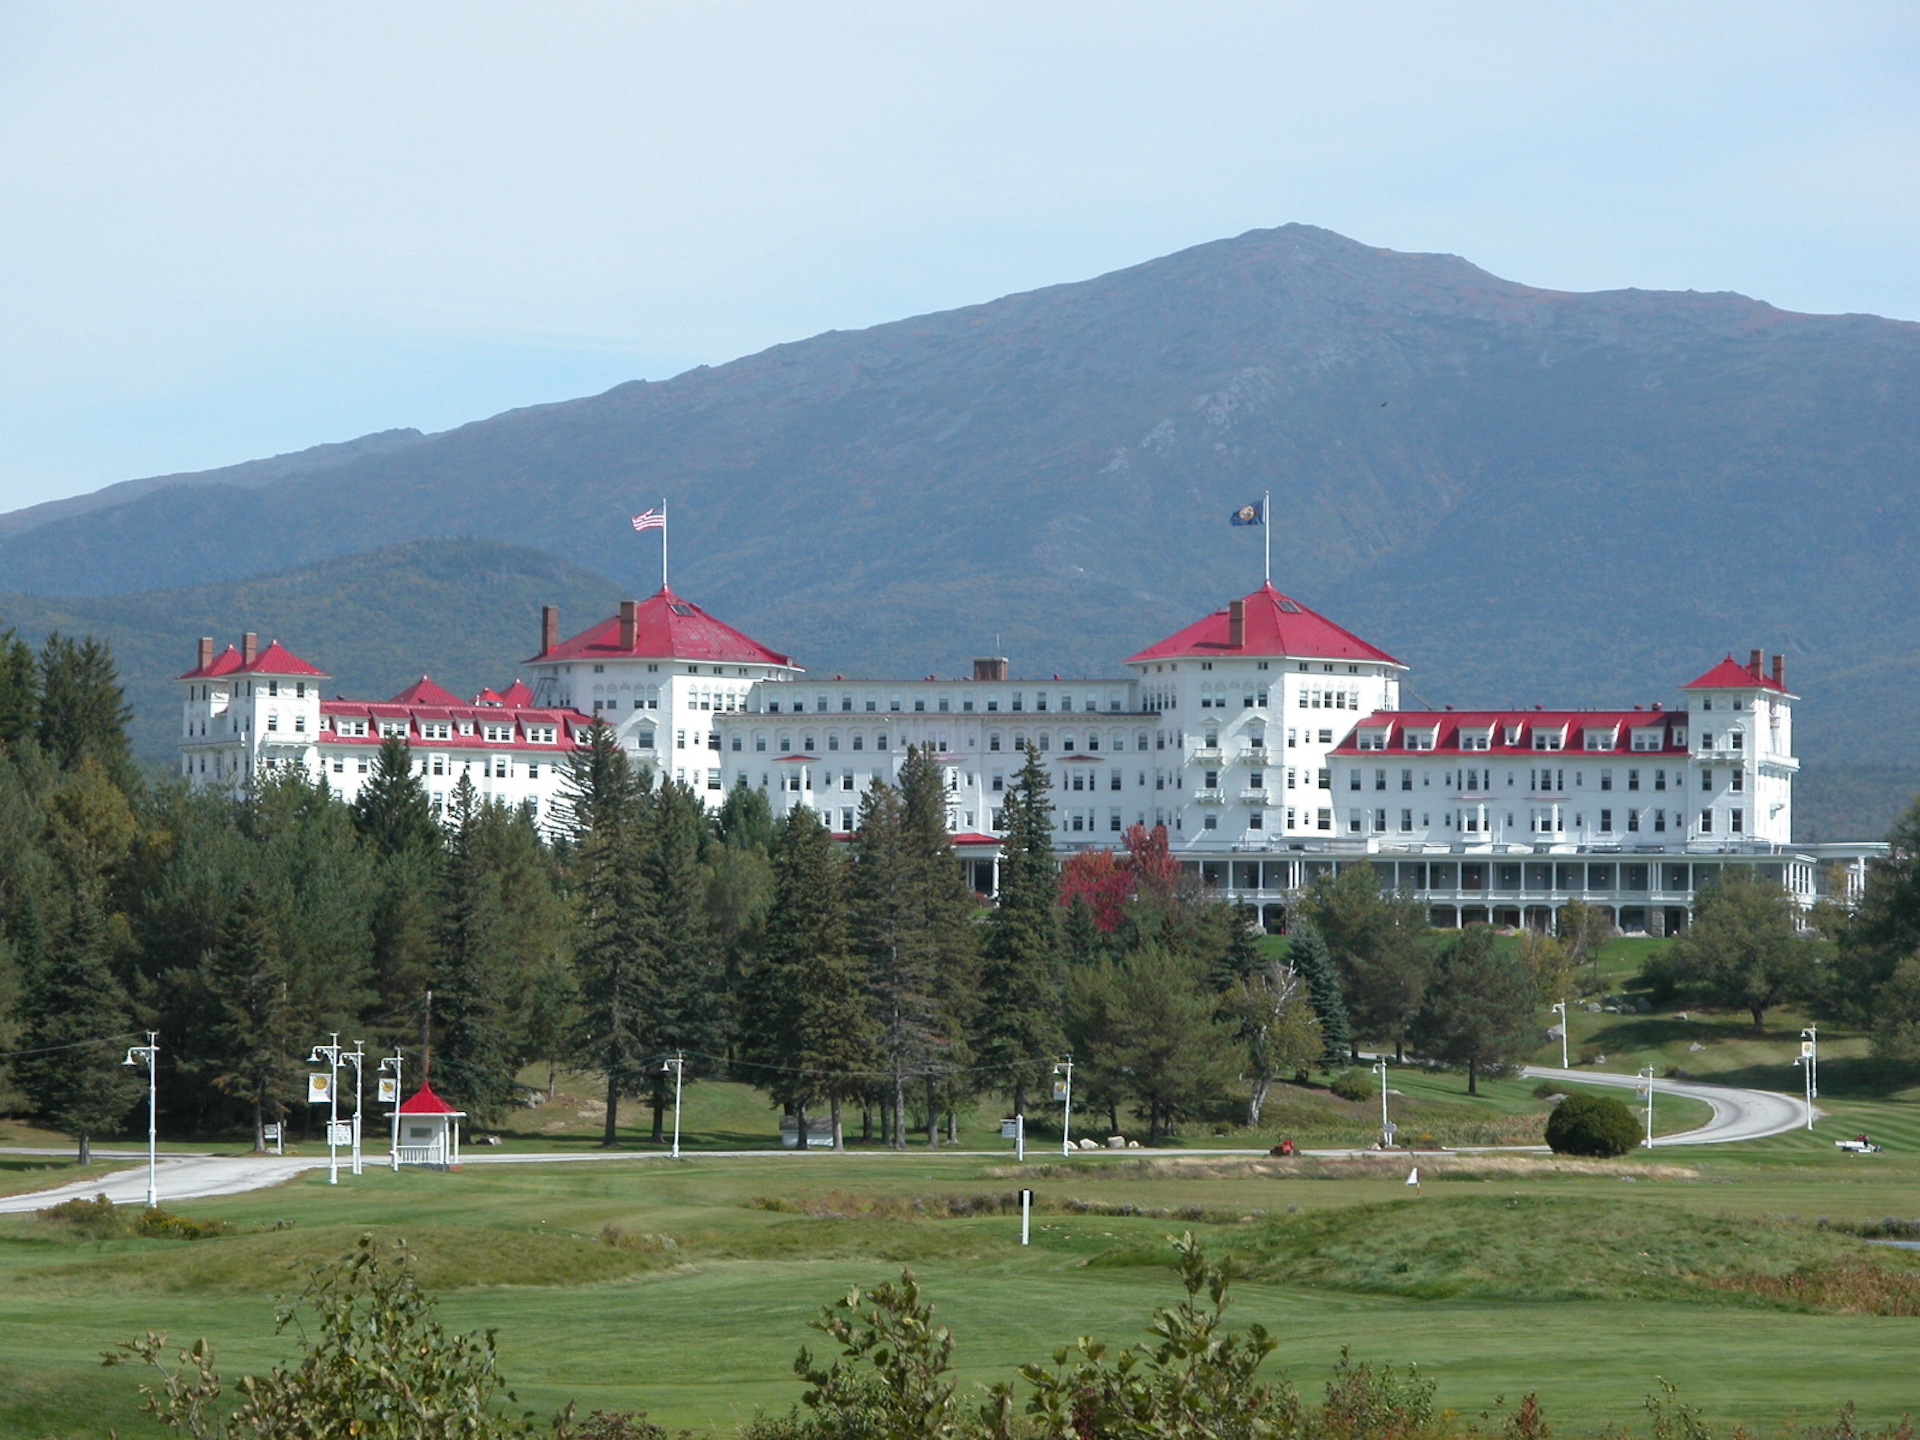 Il Mount Washington Hotel, sede della Conferenza di Bretton Woods